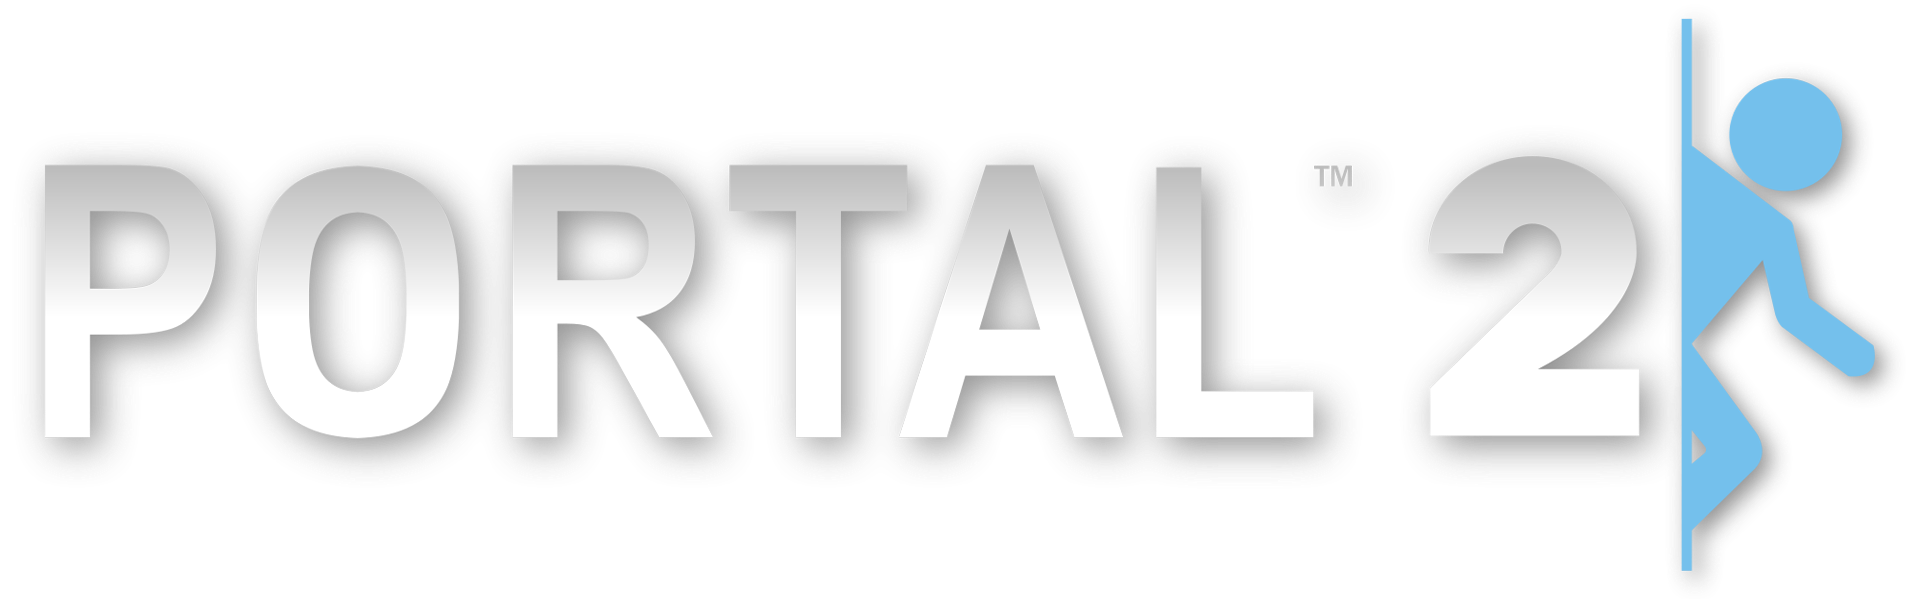 Portal и portal 2 torrent фото 106